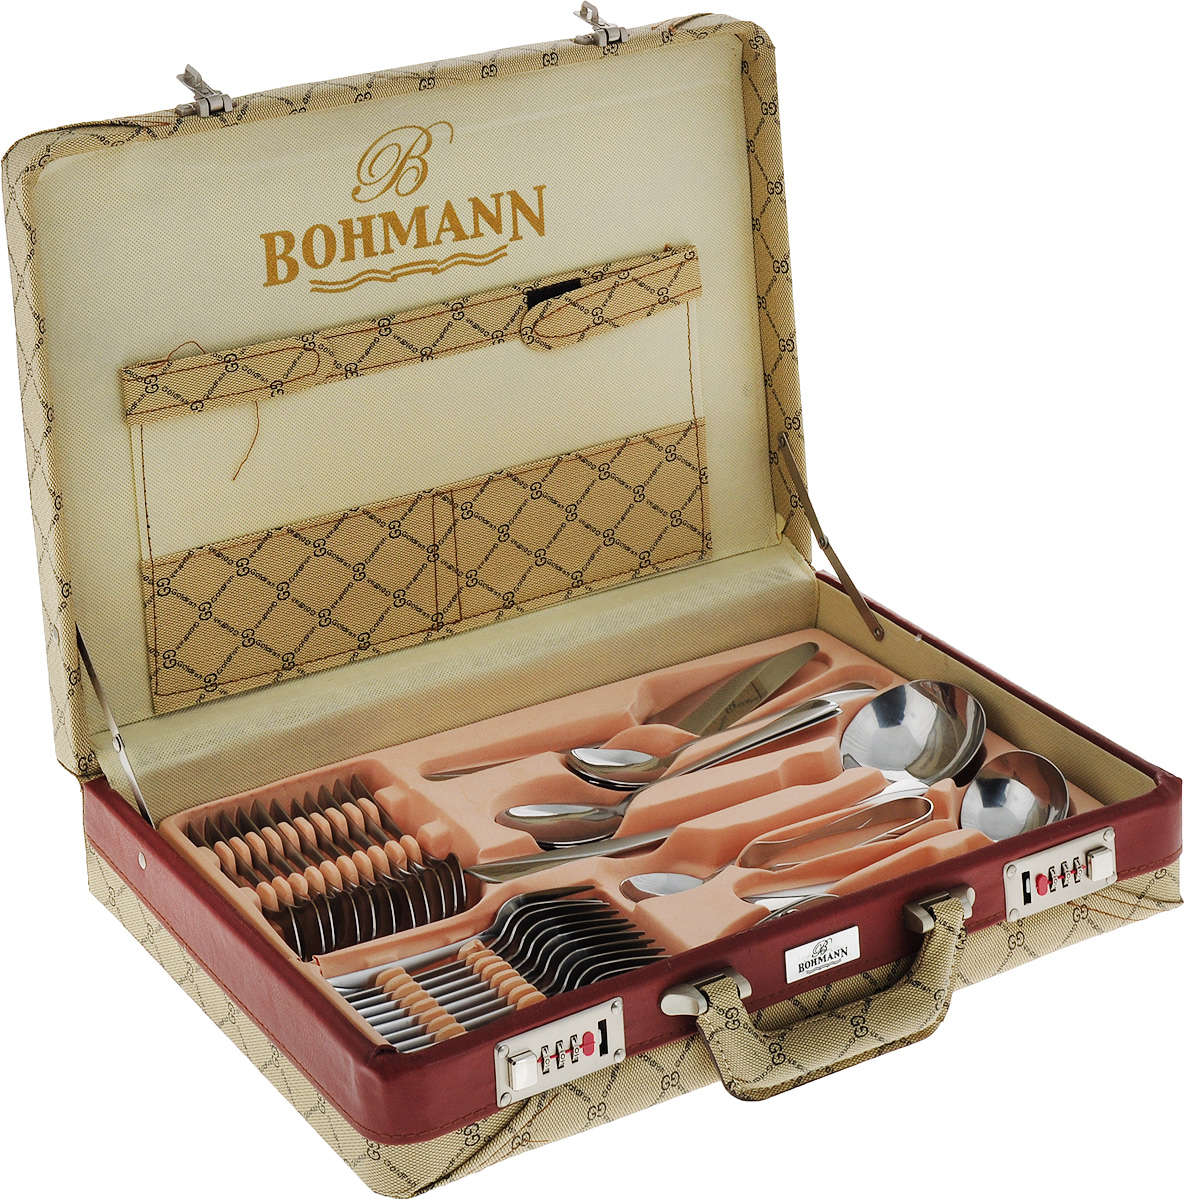 Bohmann столовые приборы 72 предмета в деревянном чемодане